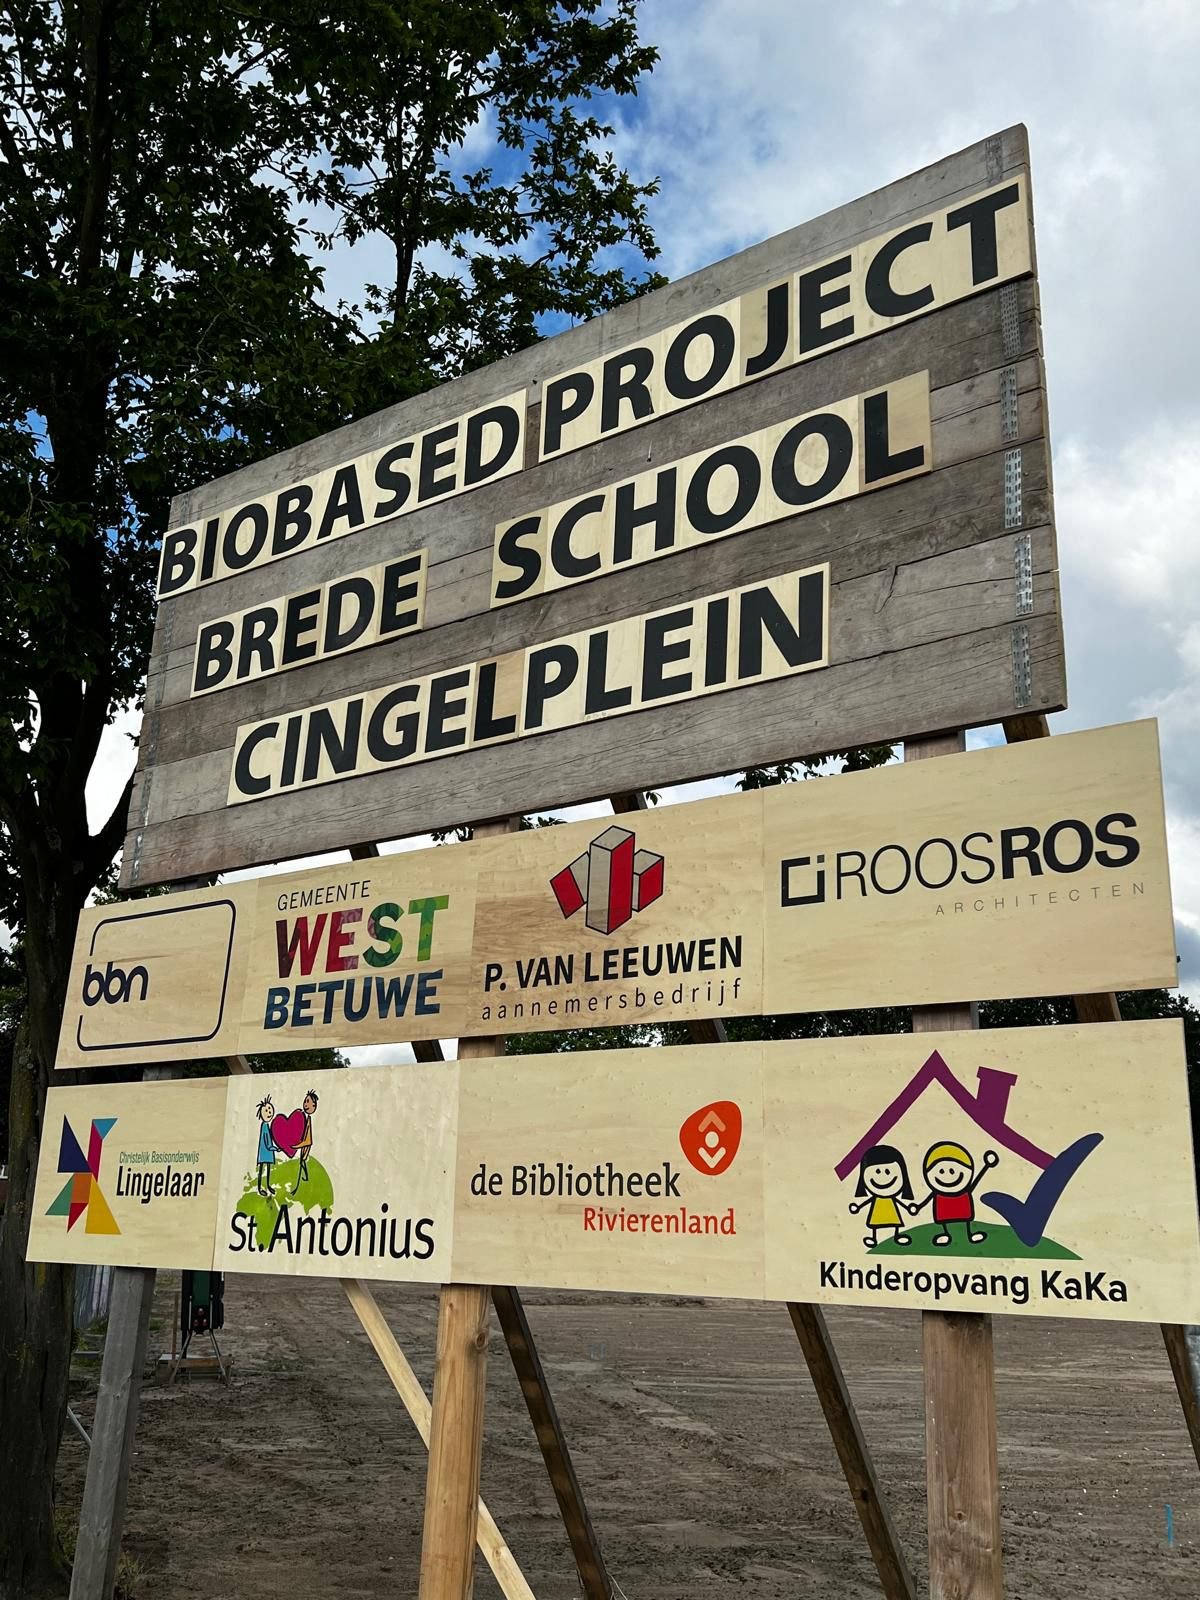 Bouwbord met tekst: Biobased project brede school cingelplein